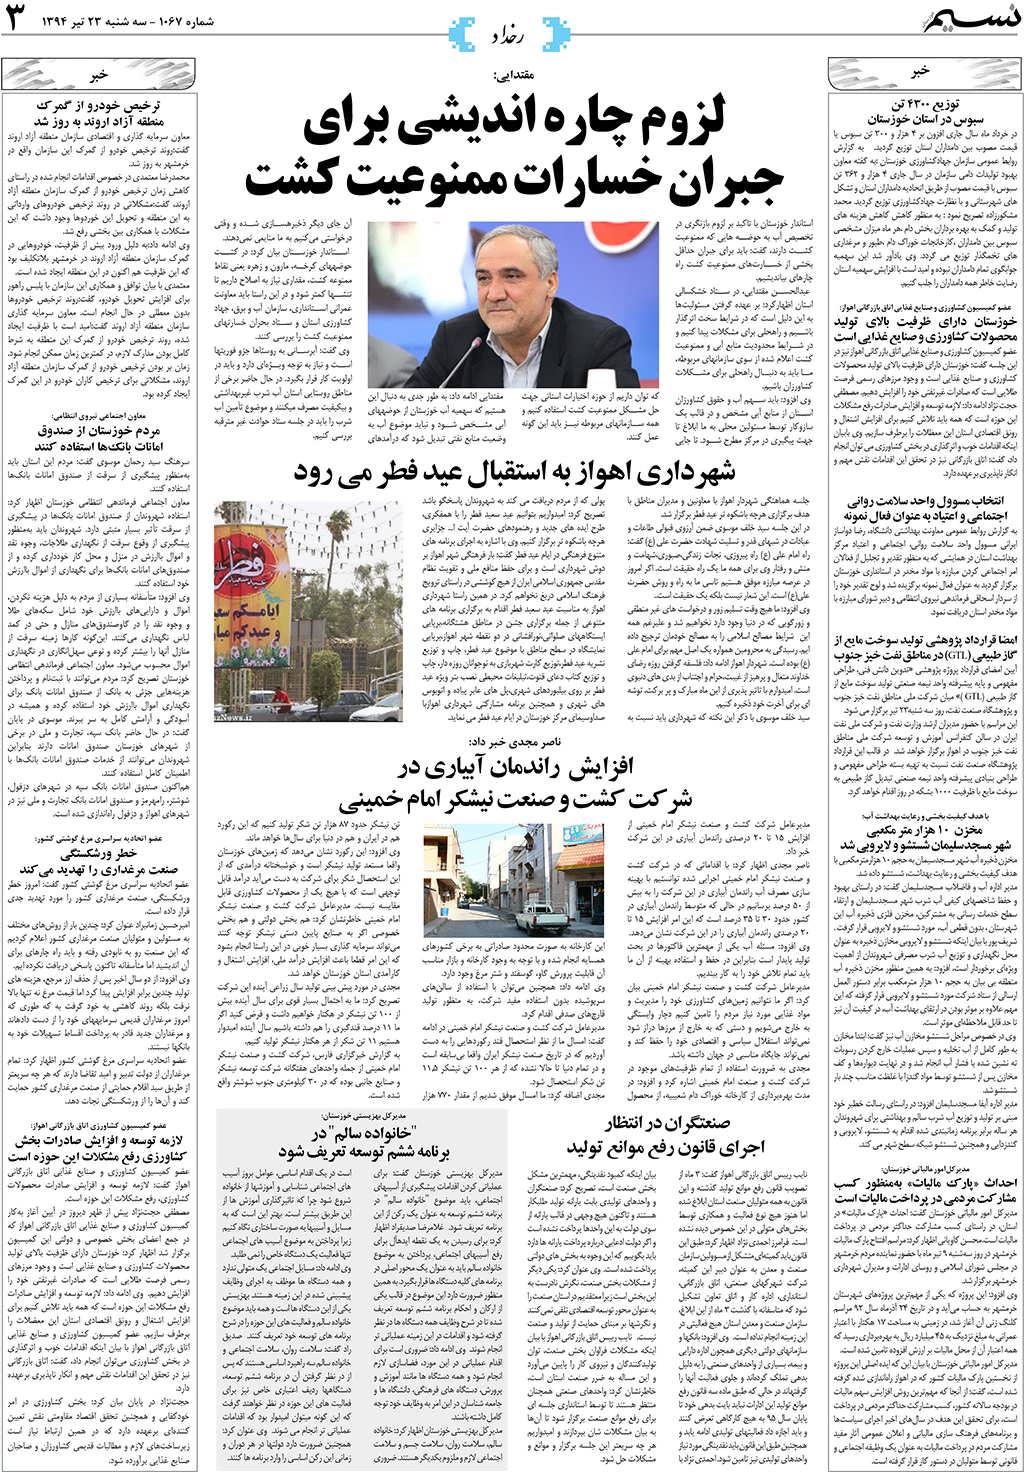 صفحه رخداد روزنامه نسیم شماره 1067